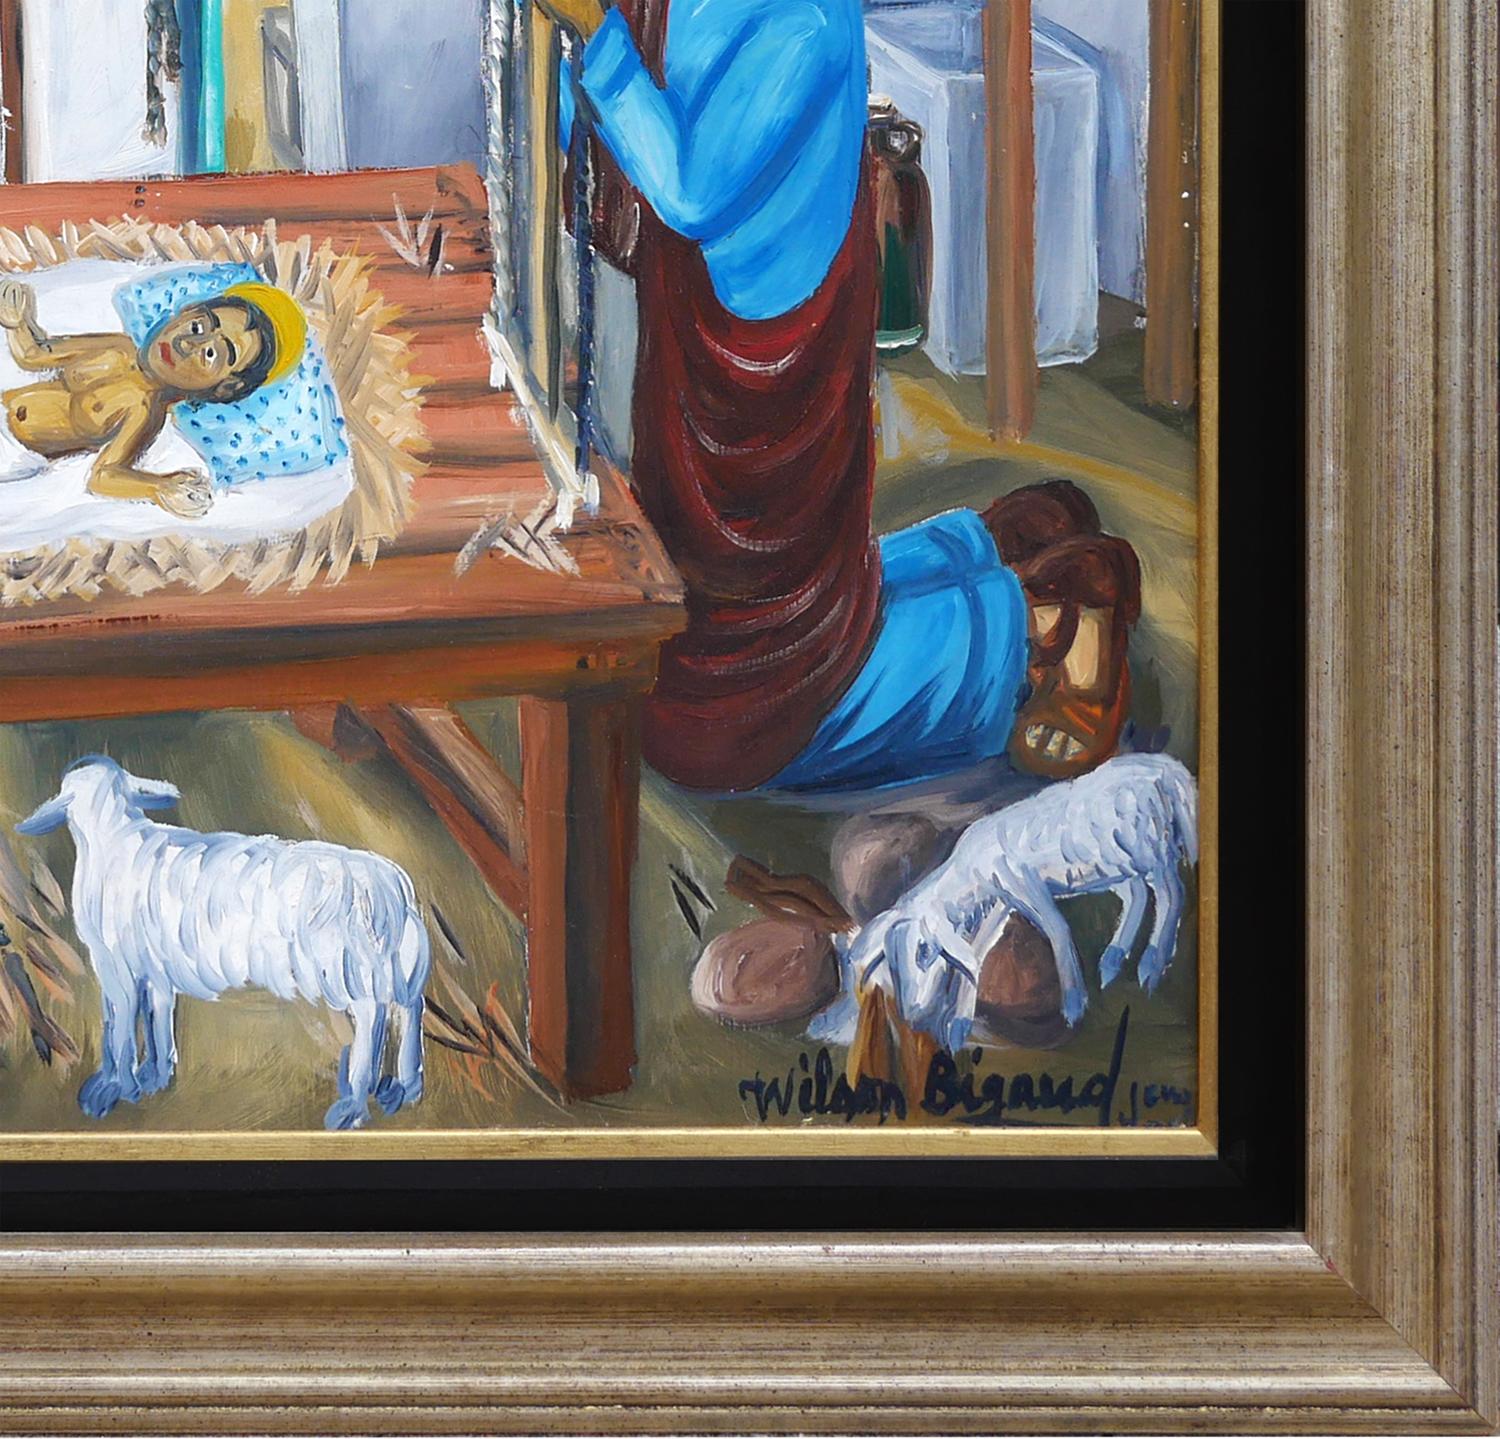 Peinture figurative moderne et colorée de la scène de la nativité chrétienne. L'œuvre présente une figure centrale de l'enfant Jésus dans une crèche, entouré de Marie, Joseph, les Rois mages et divers animaux de la ferme. Par la fenêtre arrière, on